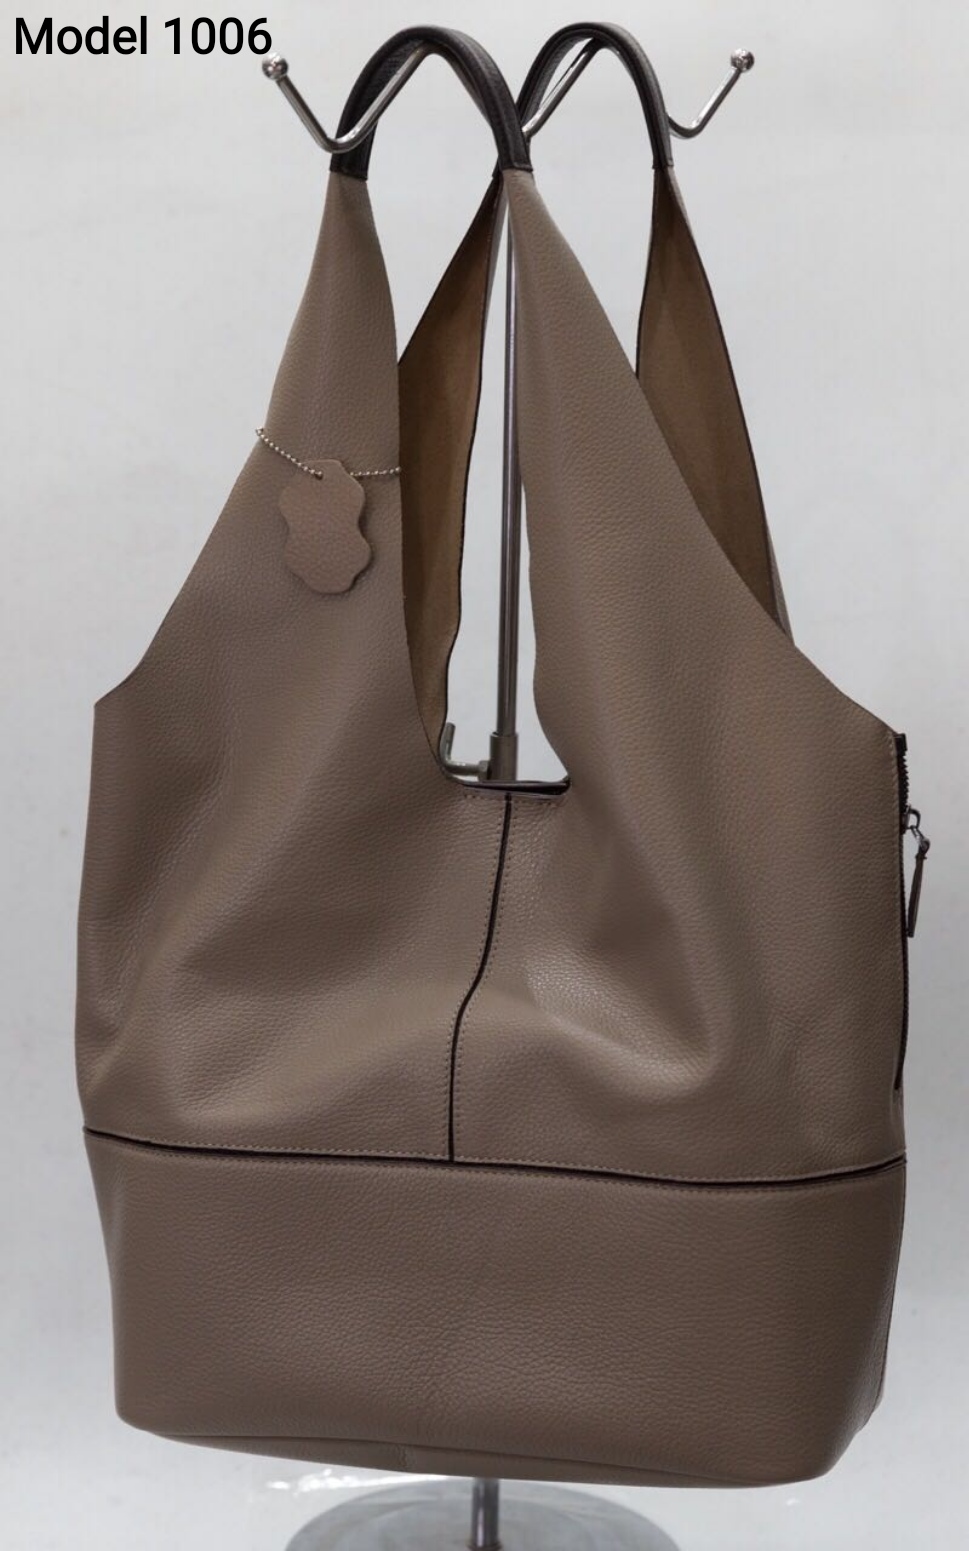 Handbags Leather Wholesale Turkish Handbags